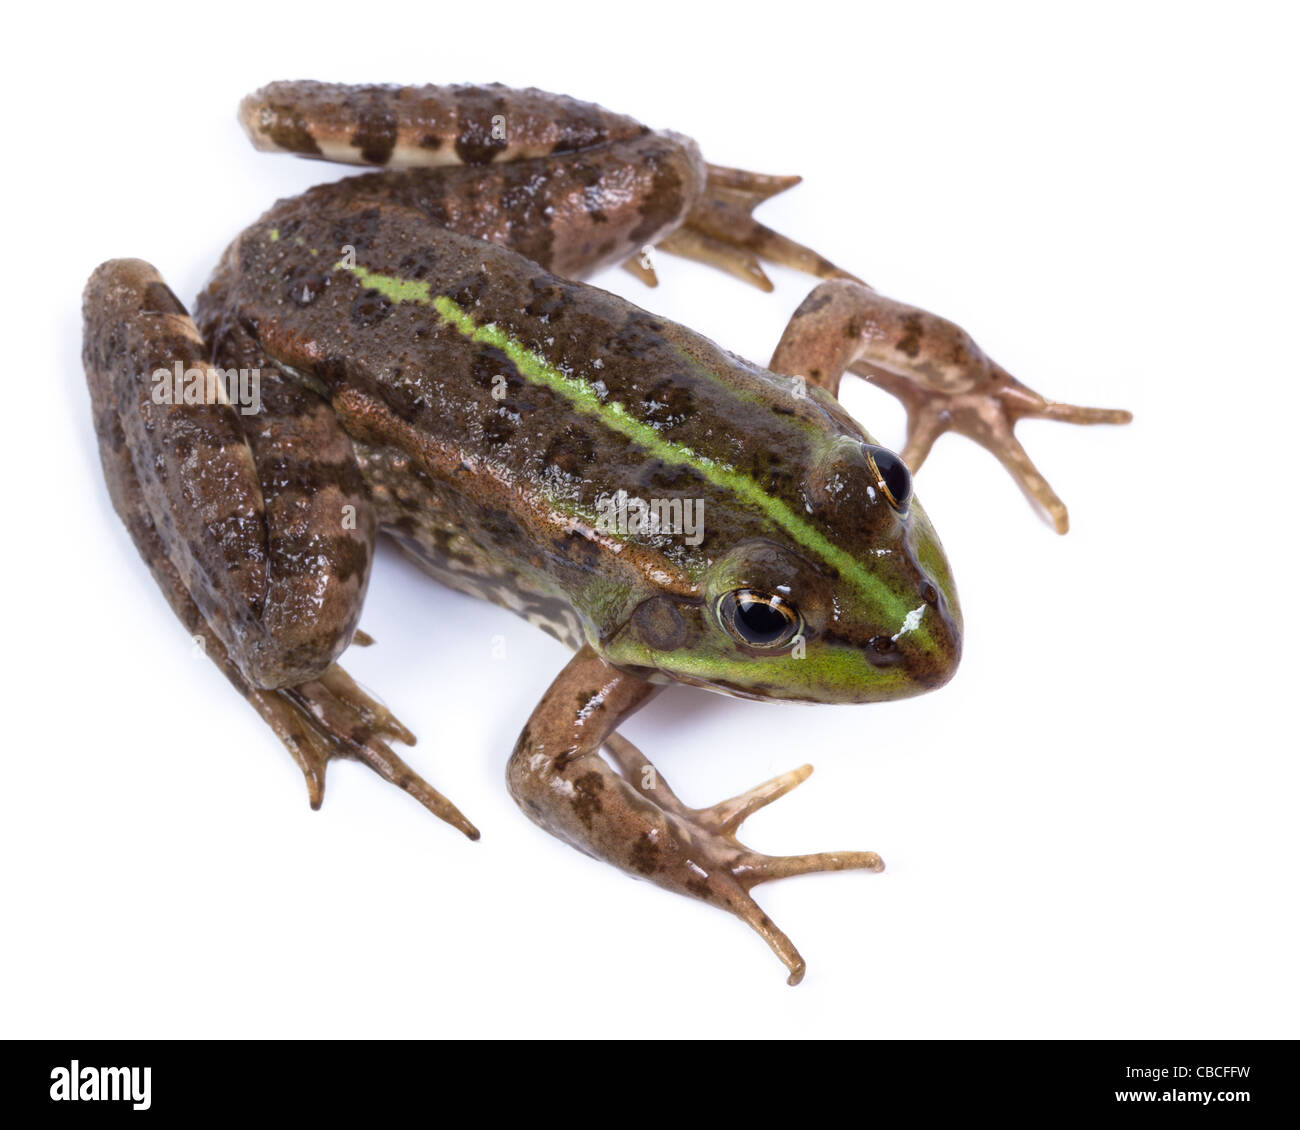 Marsh Frog (Rana ridibunda) in front of white background, isolated. Stock Photo